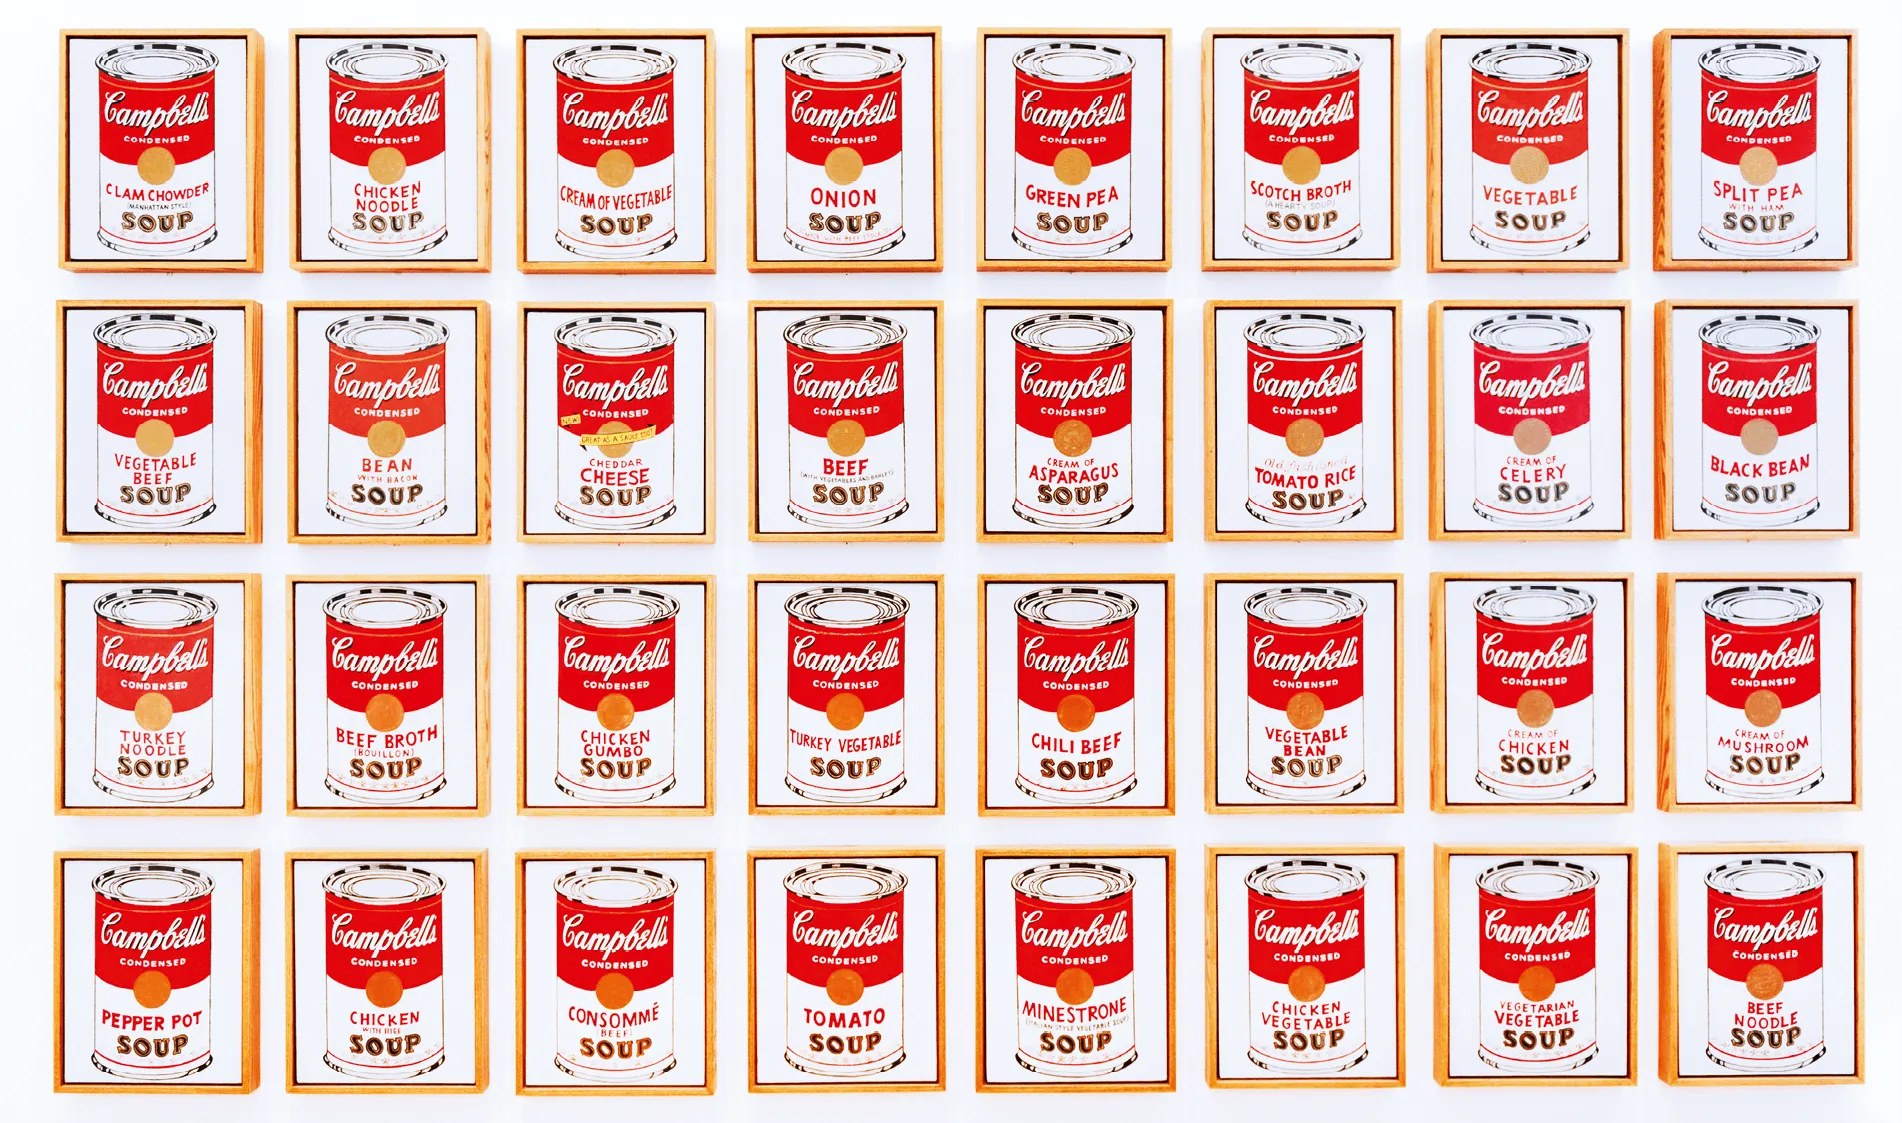 Andy Warhol, Campbell's Soup Cans
Trente-deux boîtes de soupe Campbell, 1962